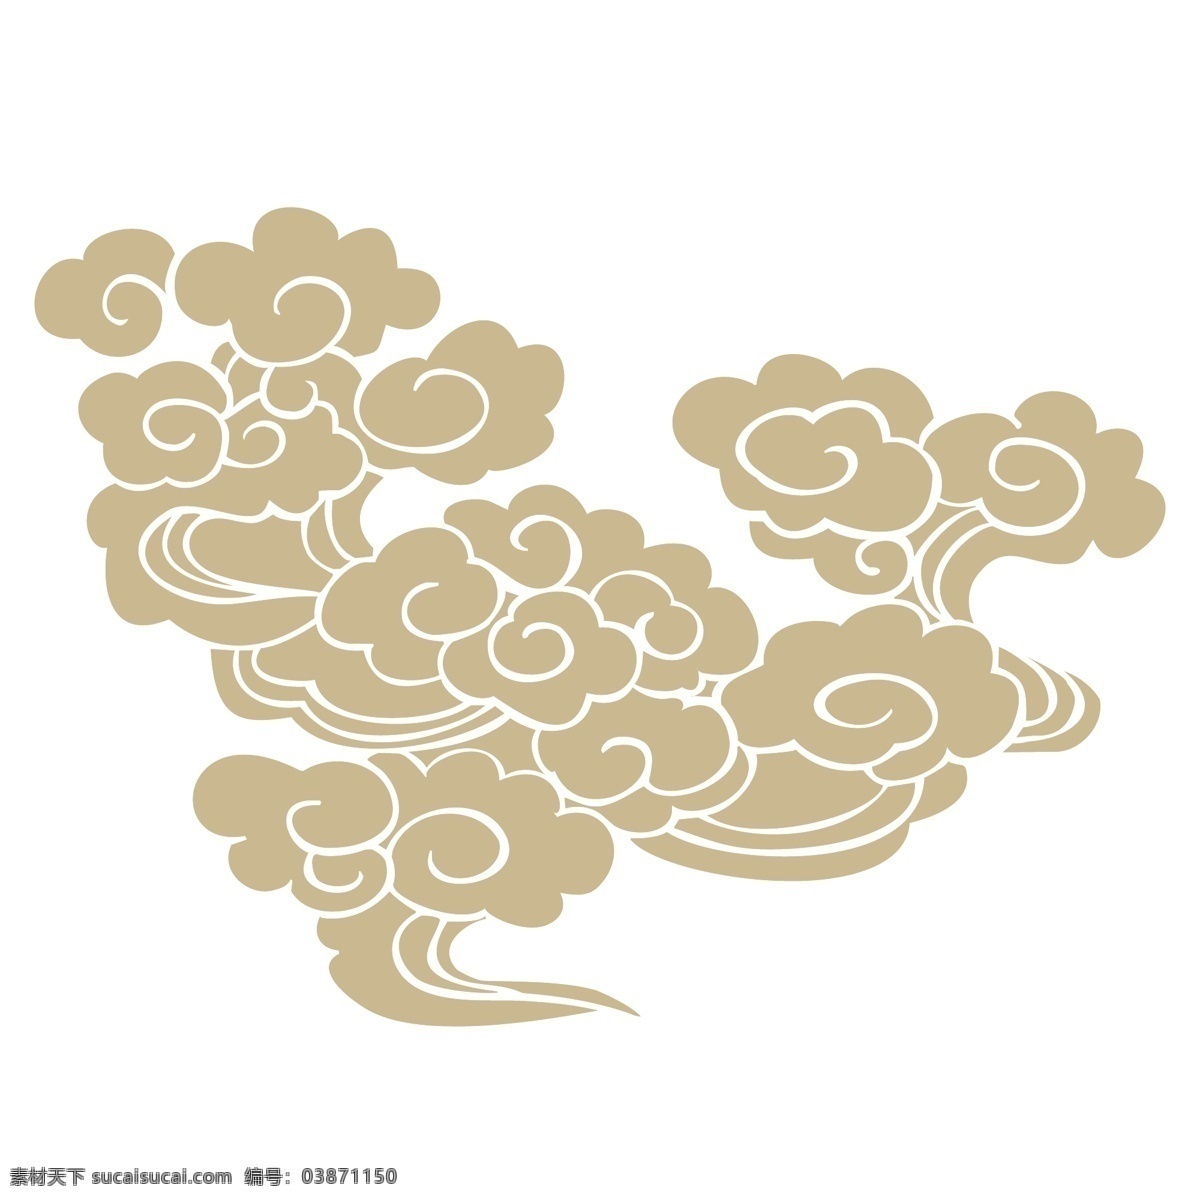 中国 风 传统 云纹 中国风 金色 花纹 图案 波浪 精美 装饰图案 雕刻图案 绘画 服装印花 涂鸦 地砖花纹 地毯花纹 沙发花纹 布艺纹路 文化艺术